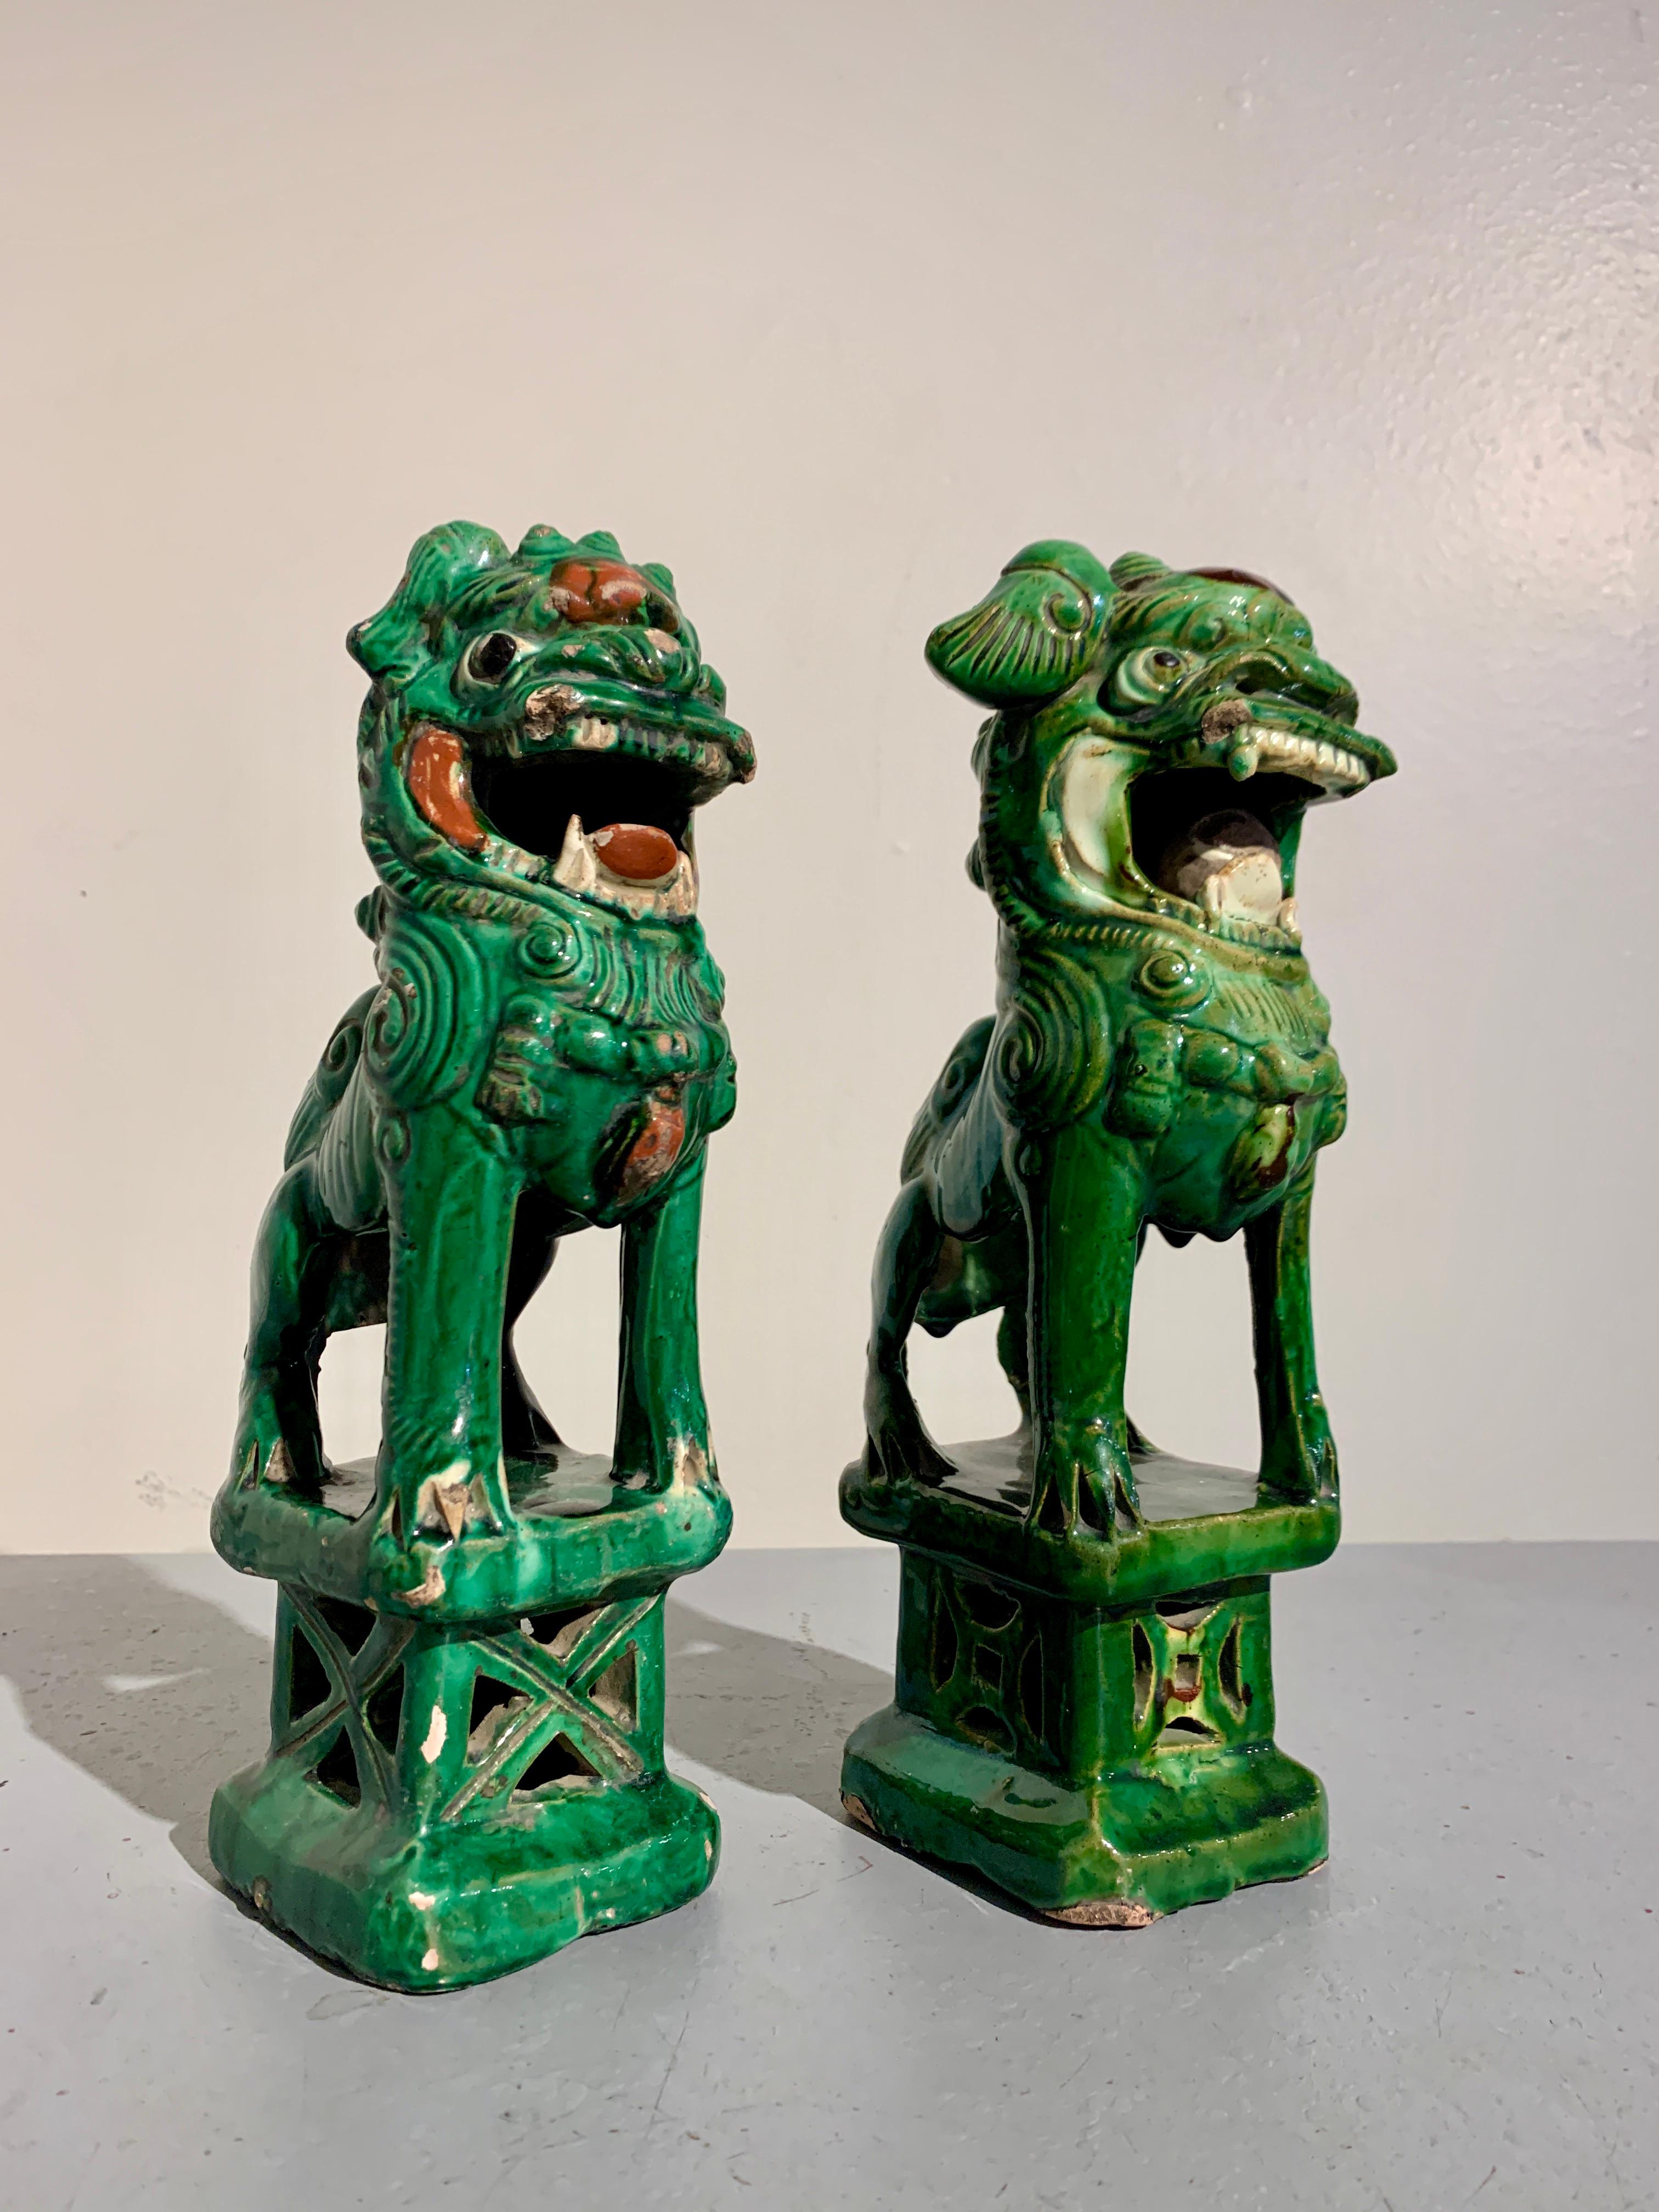 Ein charmantes Paar chinesischer, grün glasierter Räucherstäbchenhalter, China, Ende des 19. Jahrhunderts.

Die entzückenden Foo-Löwen, auch Foo-Dogs genannt, wurden als Räucherstäbchenhalter gefertigt, haben ein kleines Loch und einen